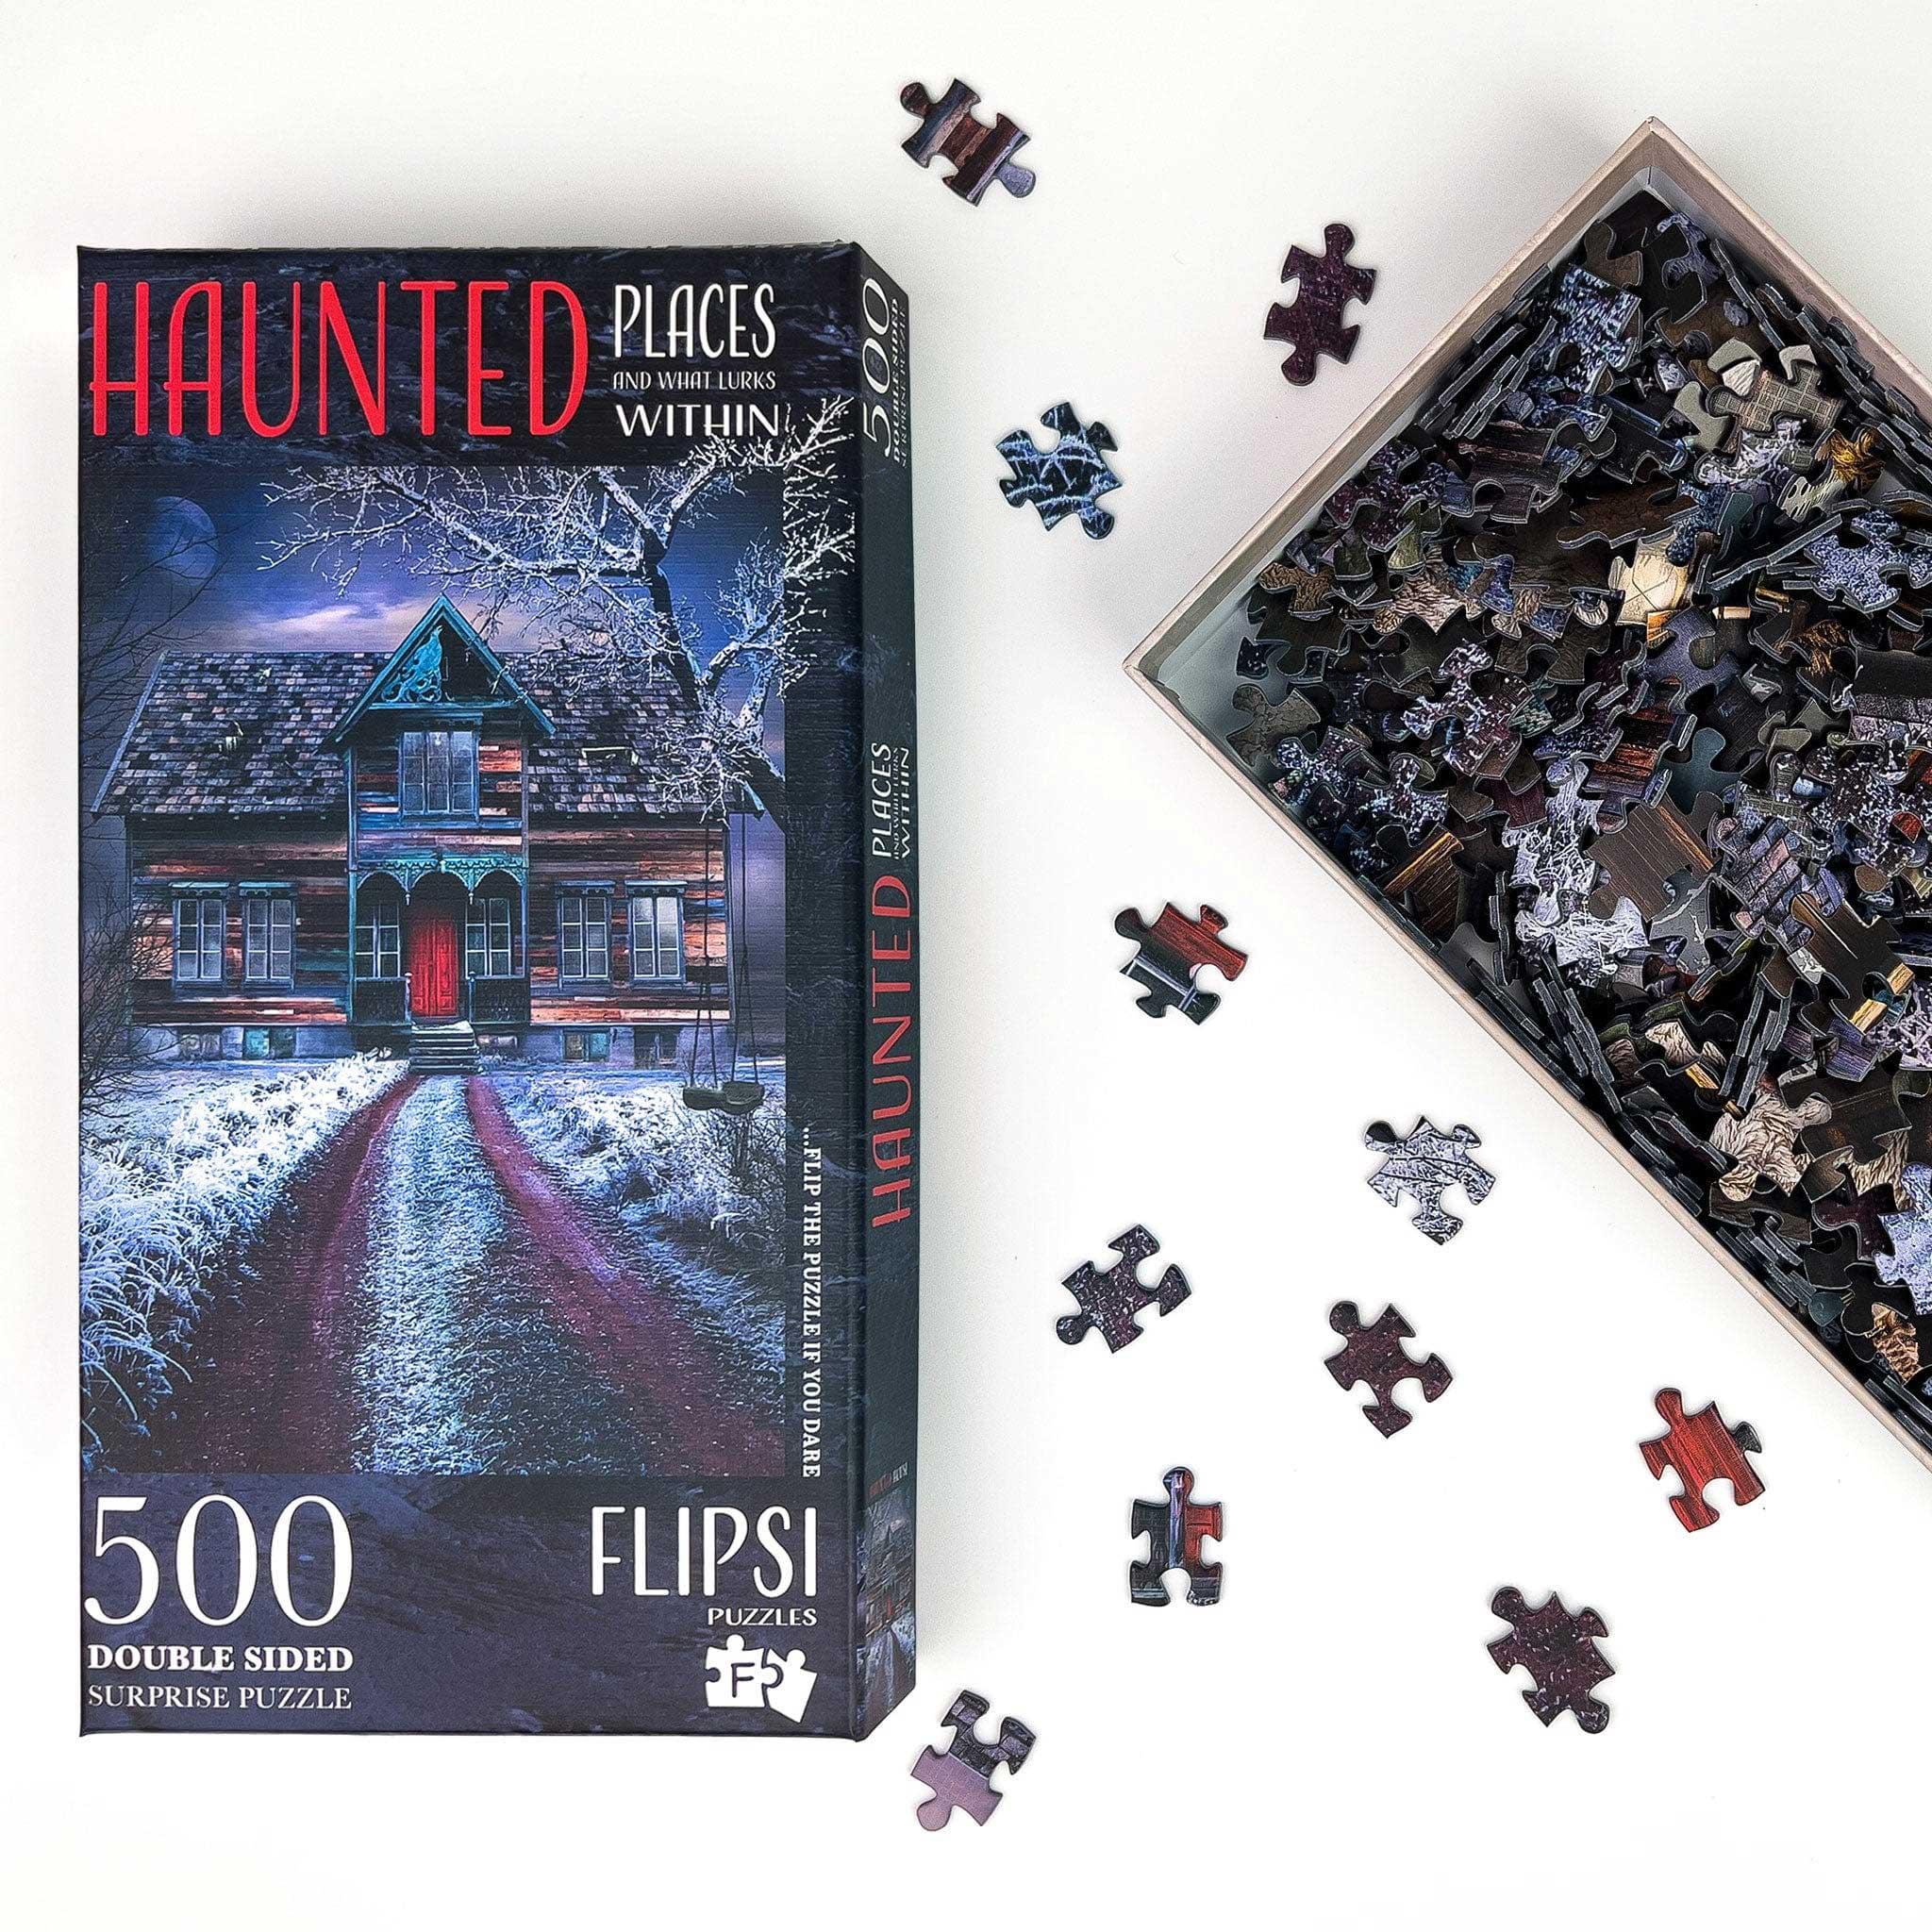 PRE-ORDER FLIPSI PLUS: All Three Haunted Places &amp; Flipsi Board - Flipsi Puzzles